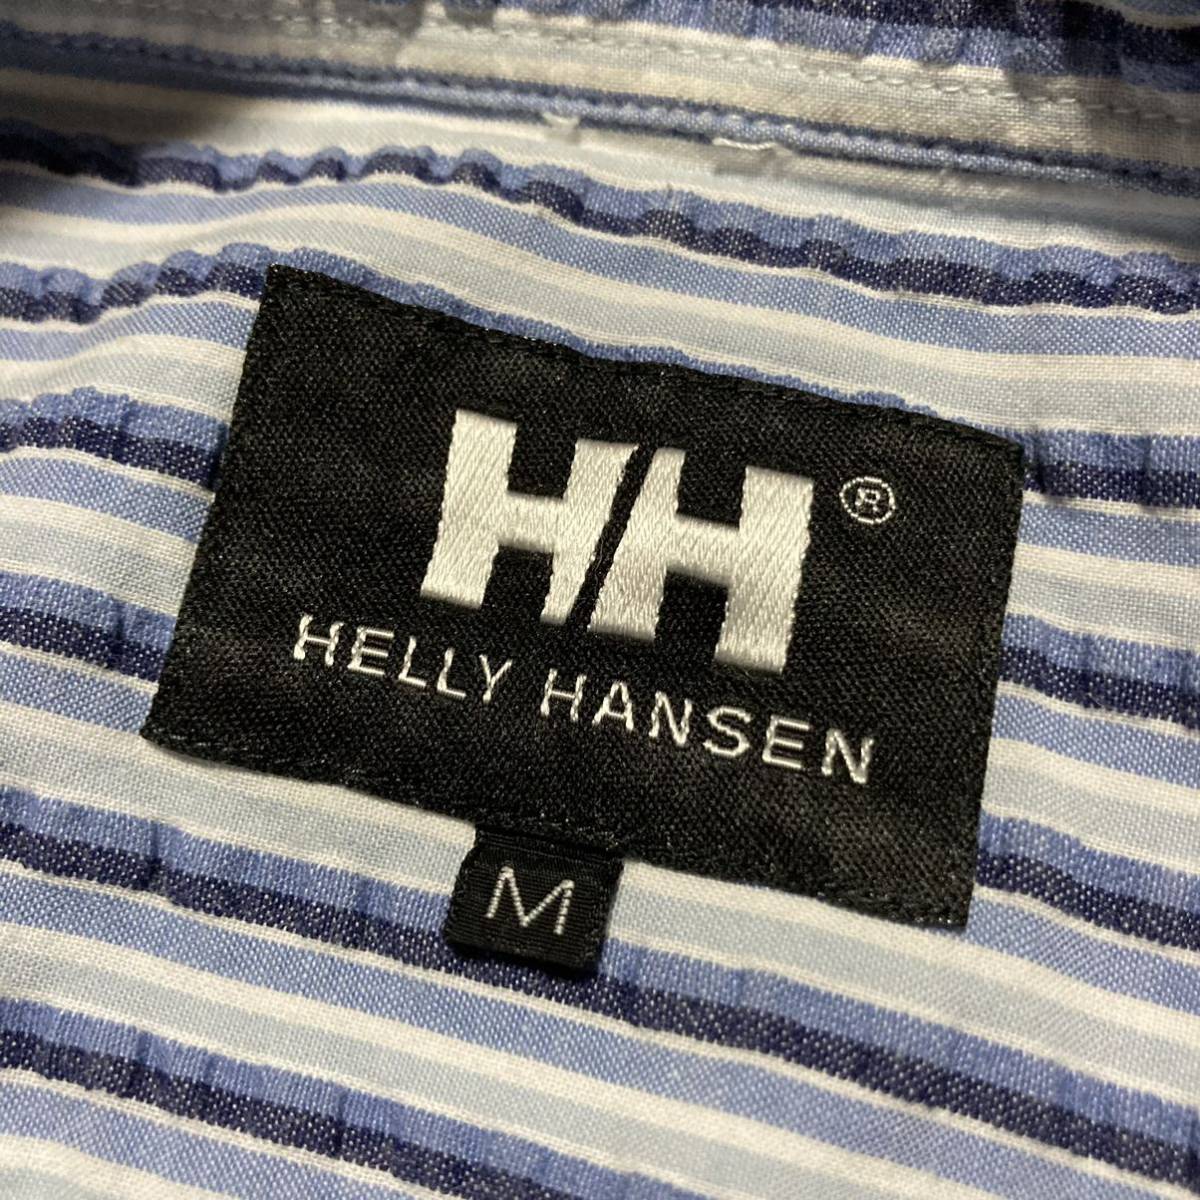 HELLY HANSEN Helly Hansen sia футбол ткань полоса рубашка с коротким рукавом M